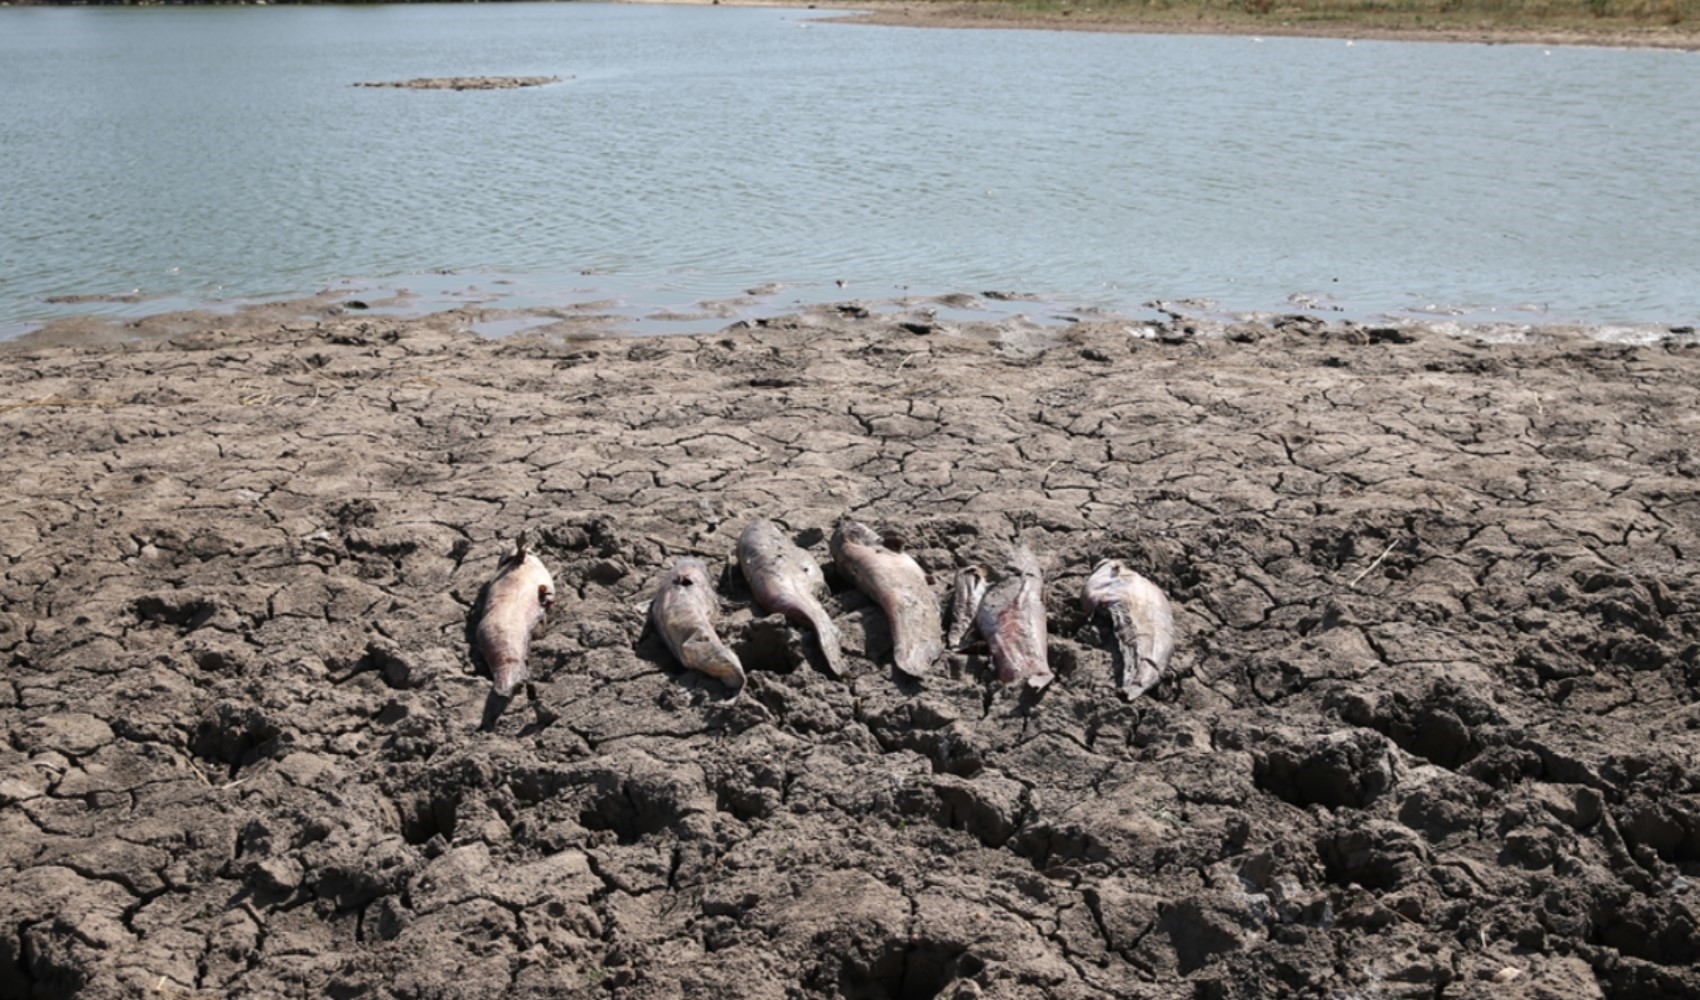 Sulama göletinde balık ölümleri: İnceleme başlatıldı